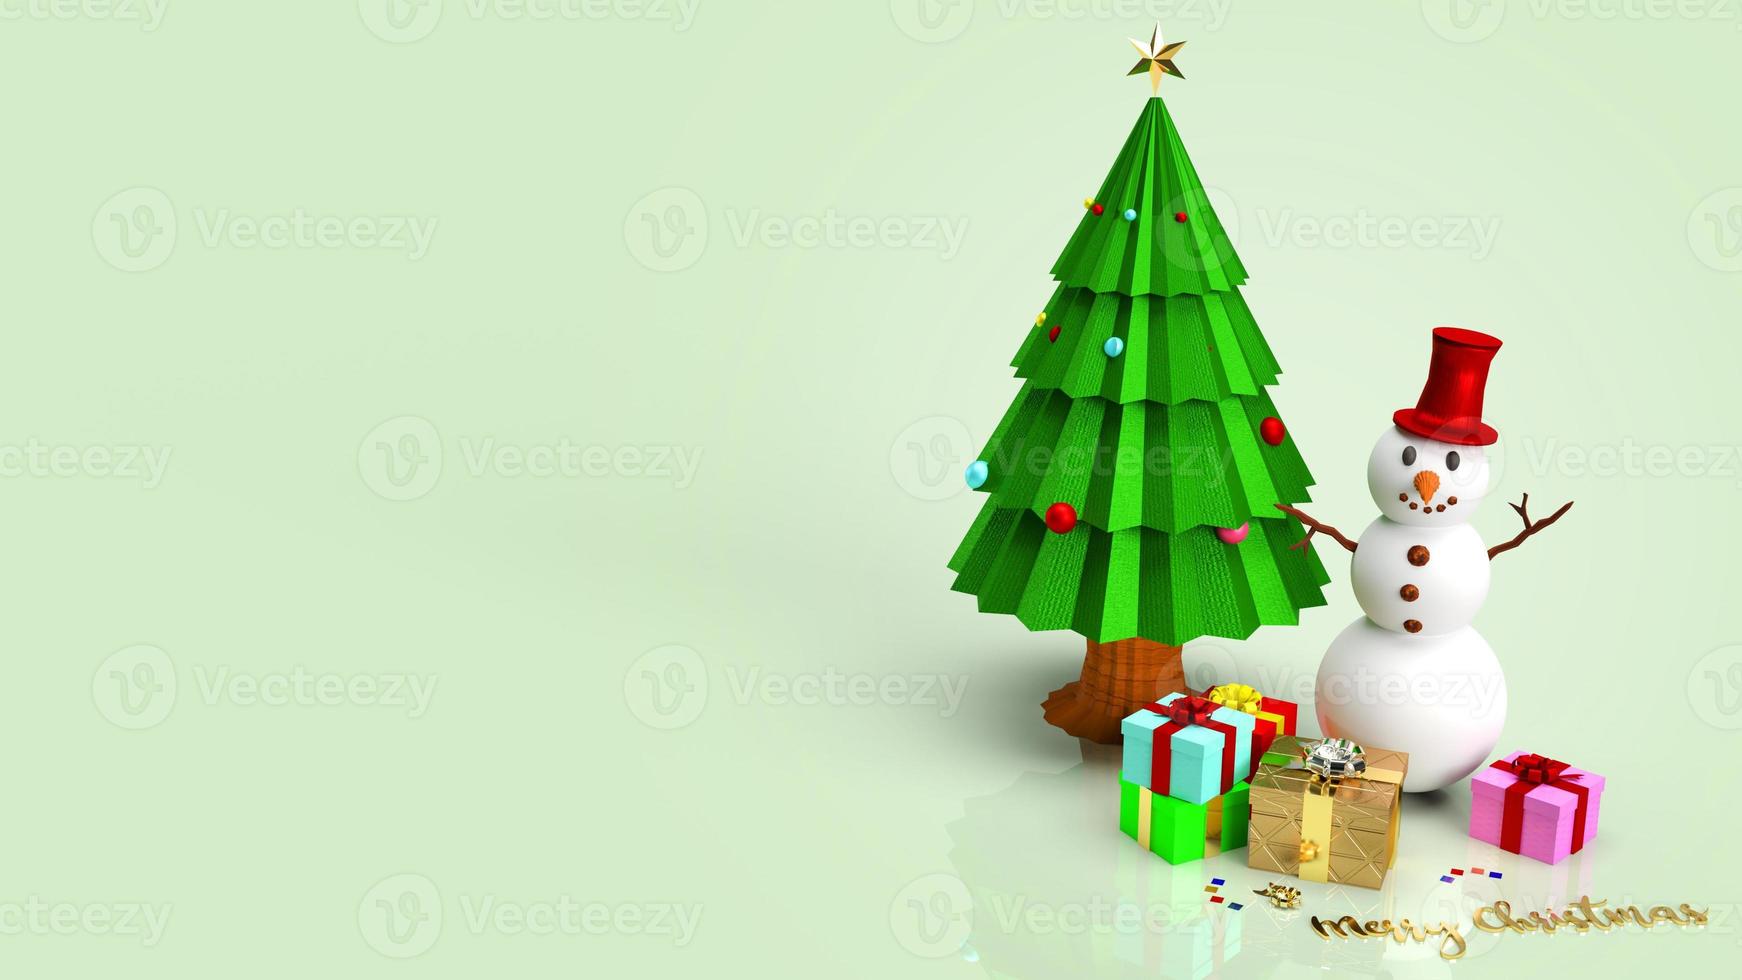 muñeco de nieve y árbol de navidad para la representación 3d de contenido de vacaciones. foto